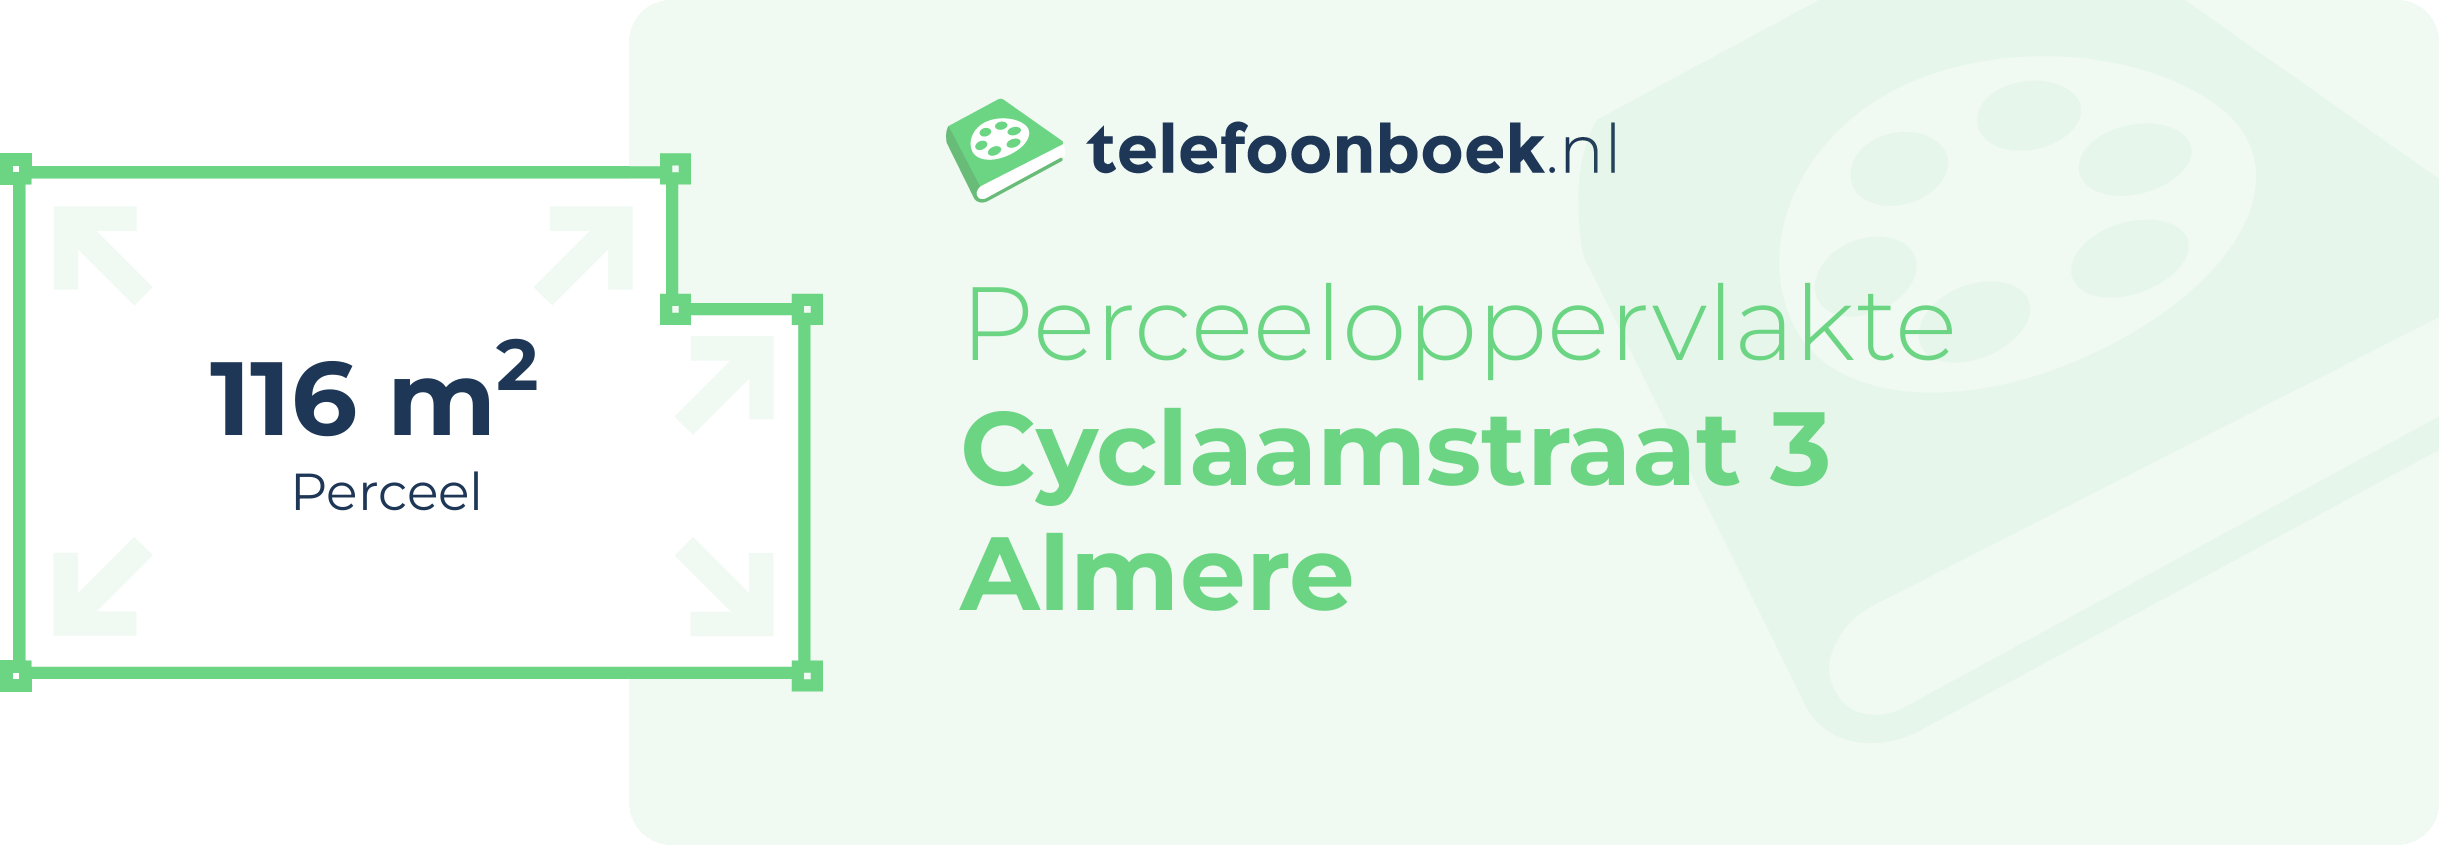 Perceeloppervlakte Cyclaamstraat 3 Almere